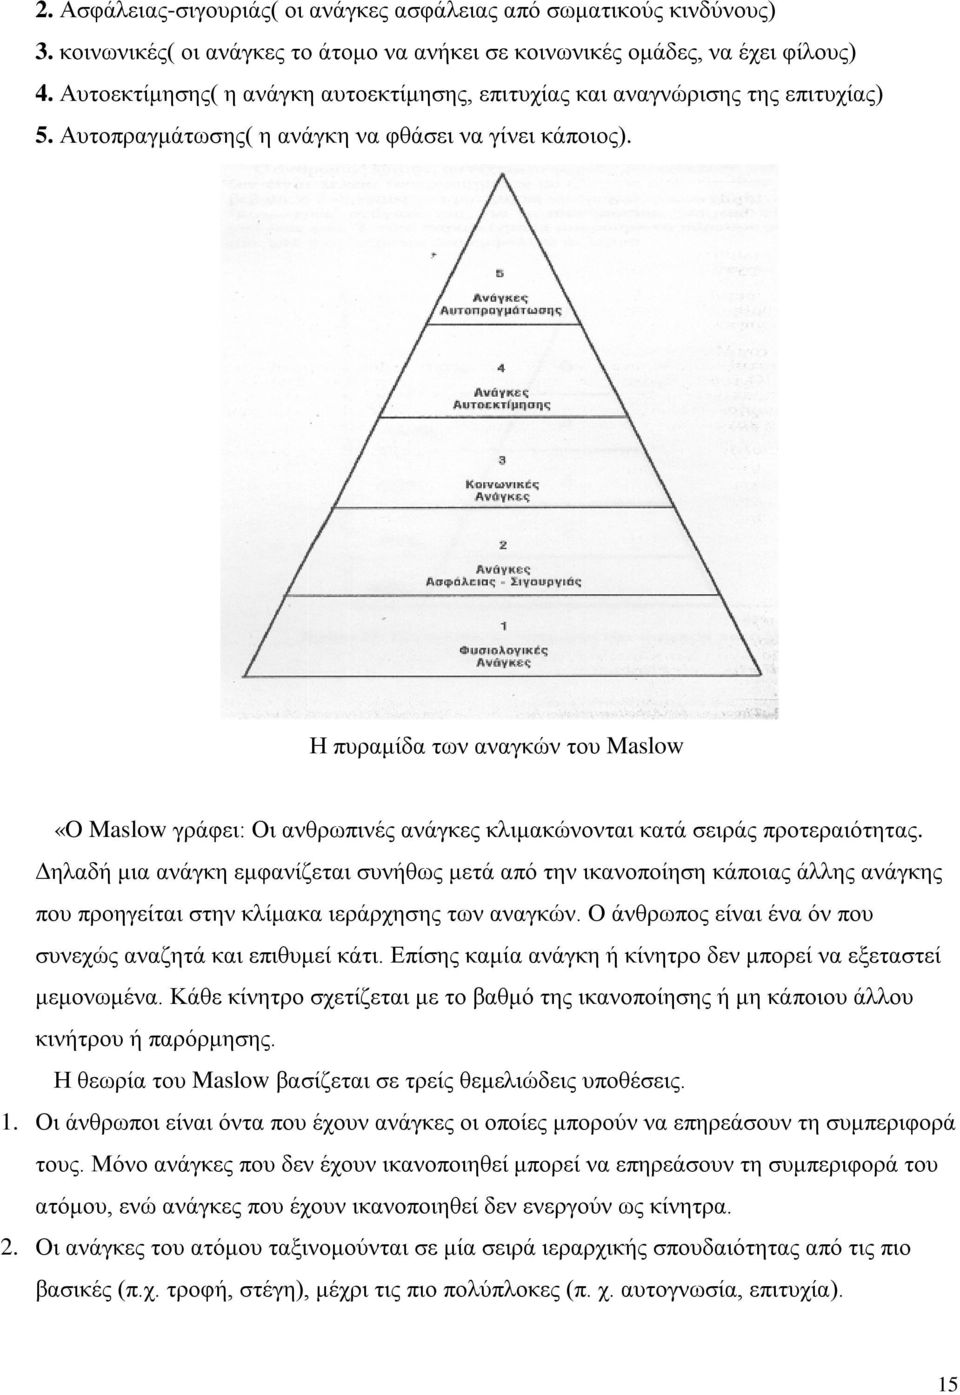 Η πυραμίδα των αναγκών του Maslow «O Maslow γράφει: Οι ανθρωπινές ανάγκες κλιμακώνονται κατά σειράς προτεραιότητας.